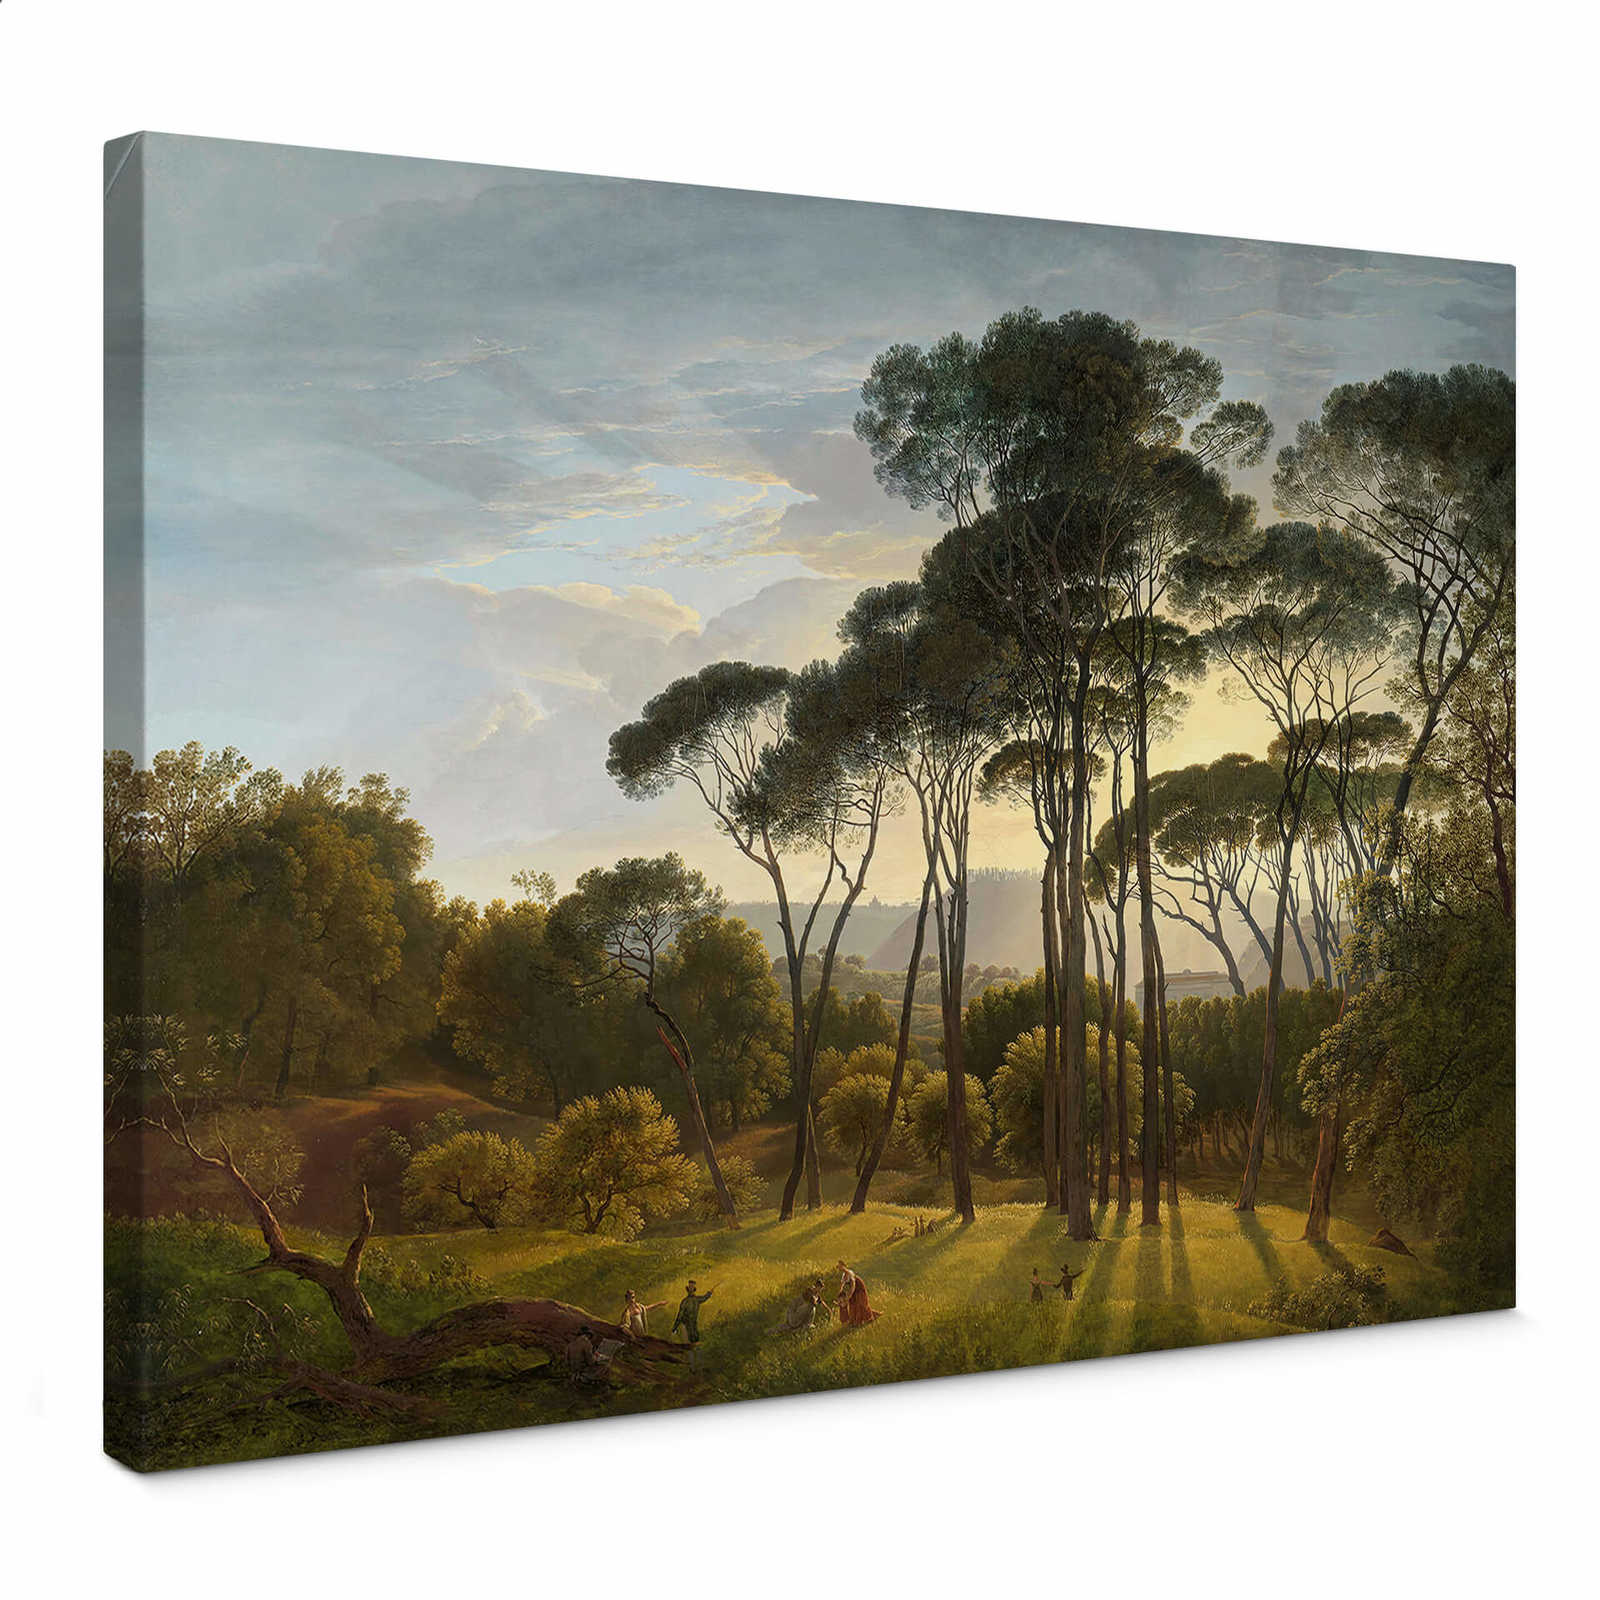         Gemälde Leinwandbild italienische Landschaft von Voogd – 0,70 m x 0,50 m
    